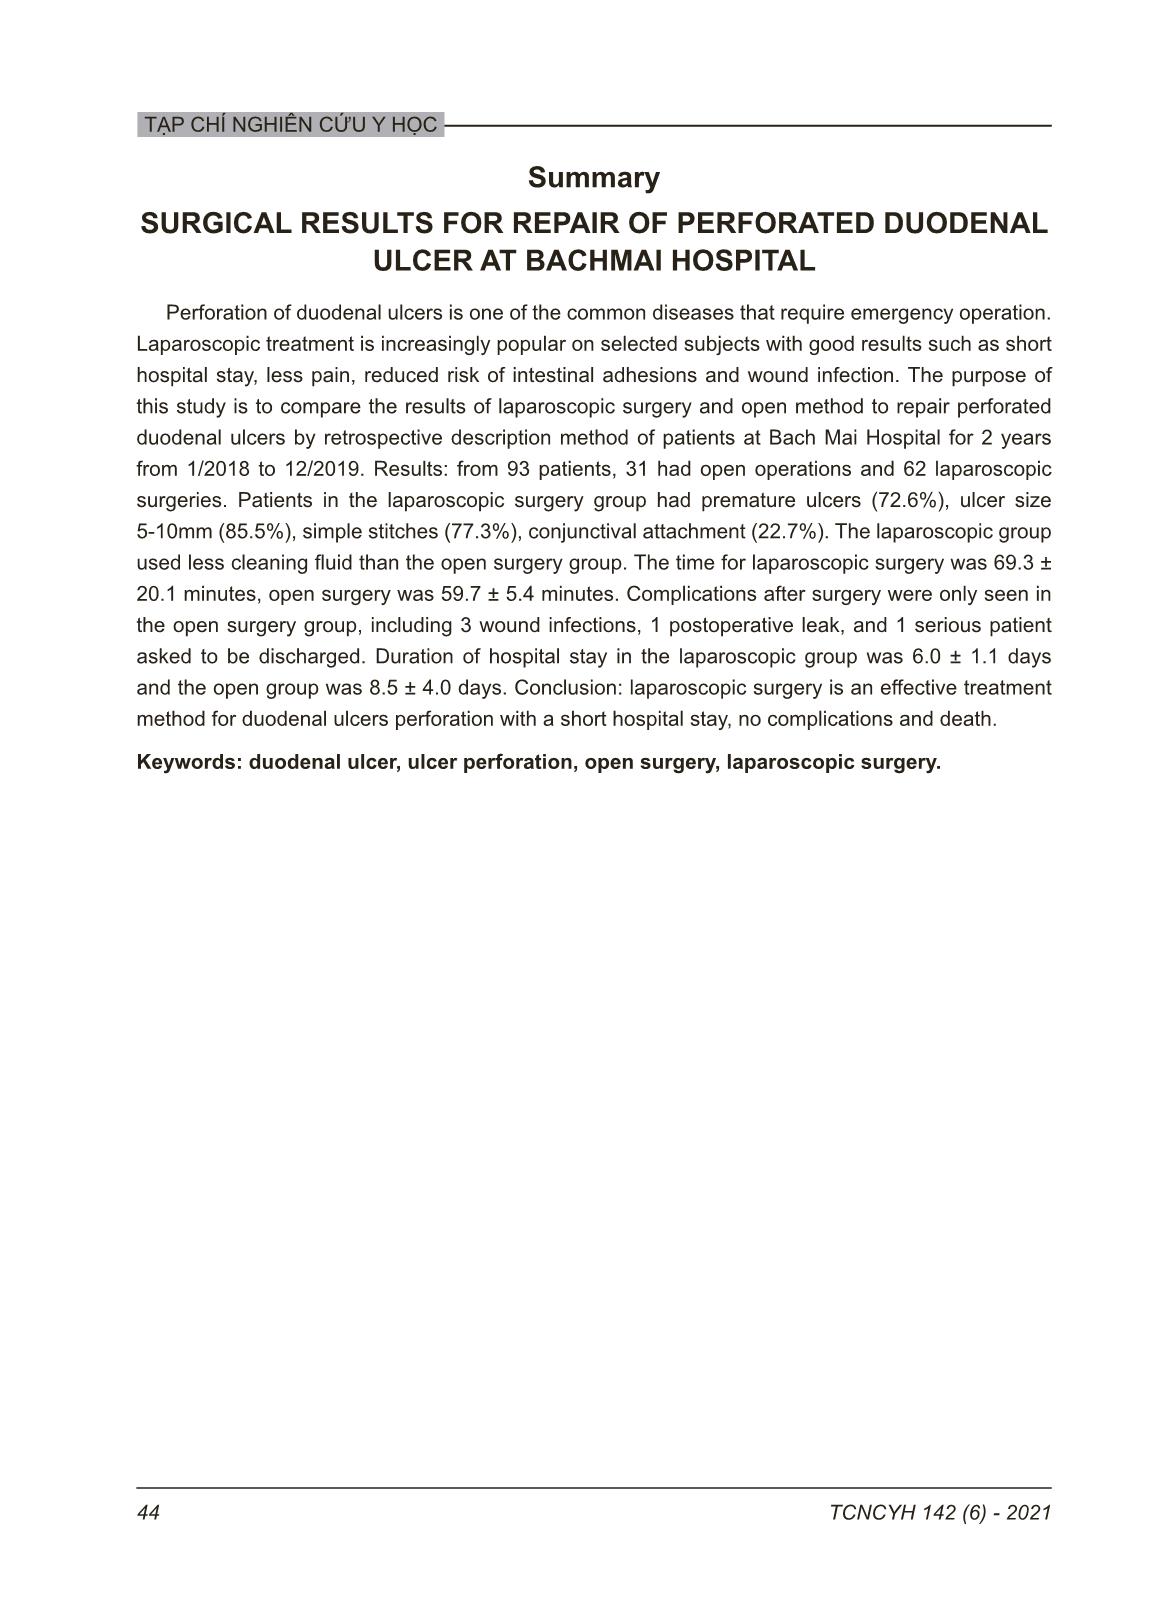 Kết quả phẫu thuật khâu thủng ổ loét hành tá tràng tại bệnh viện Bạch Mai giai đoạn 2018 - 2019 trang 8